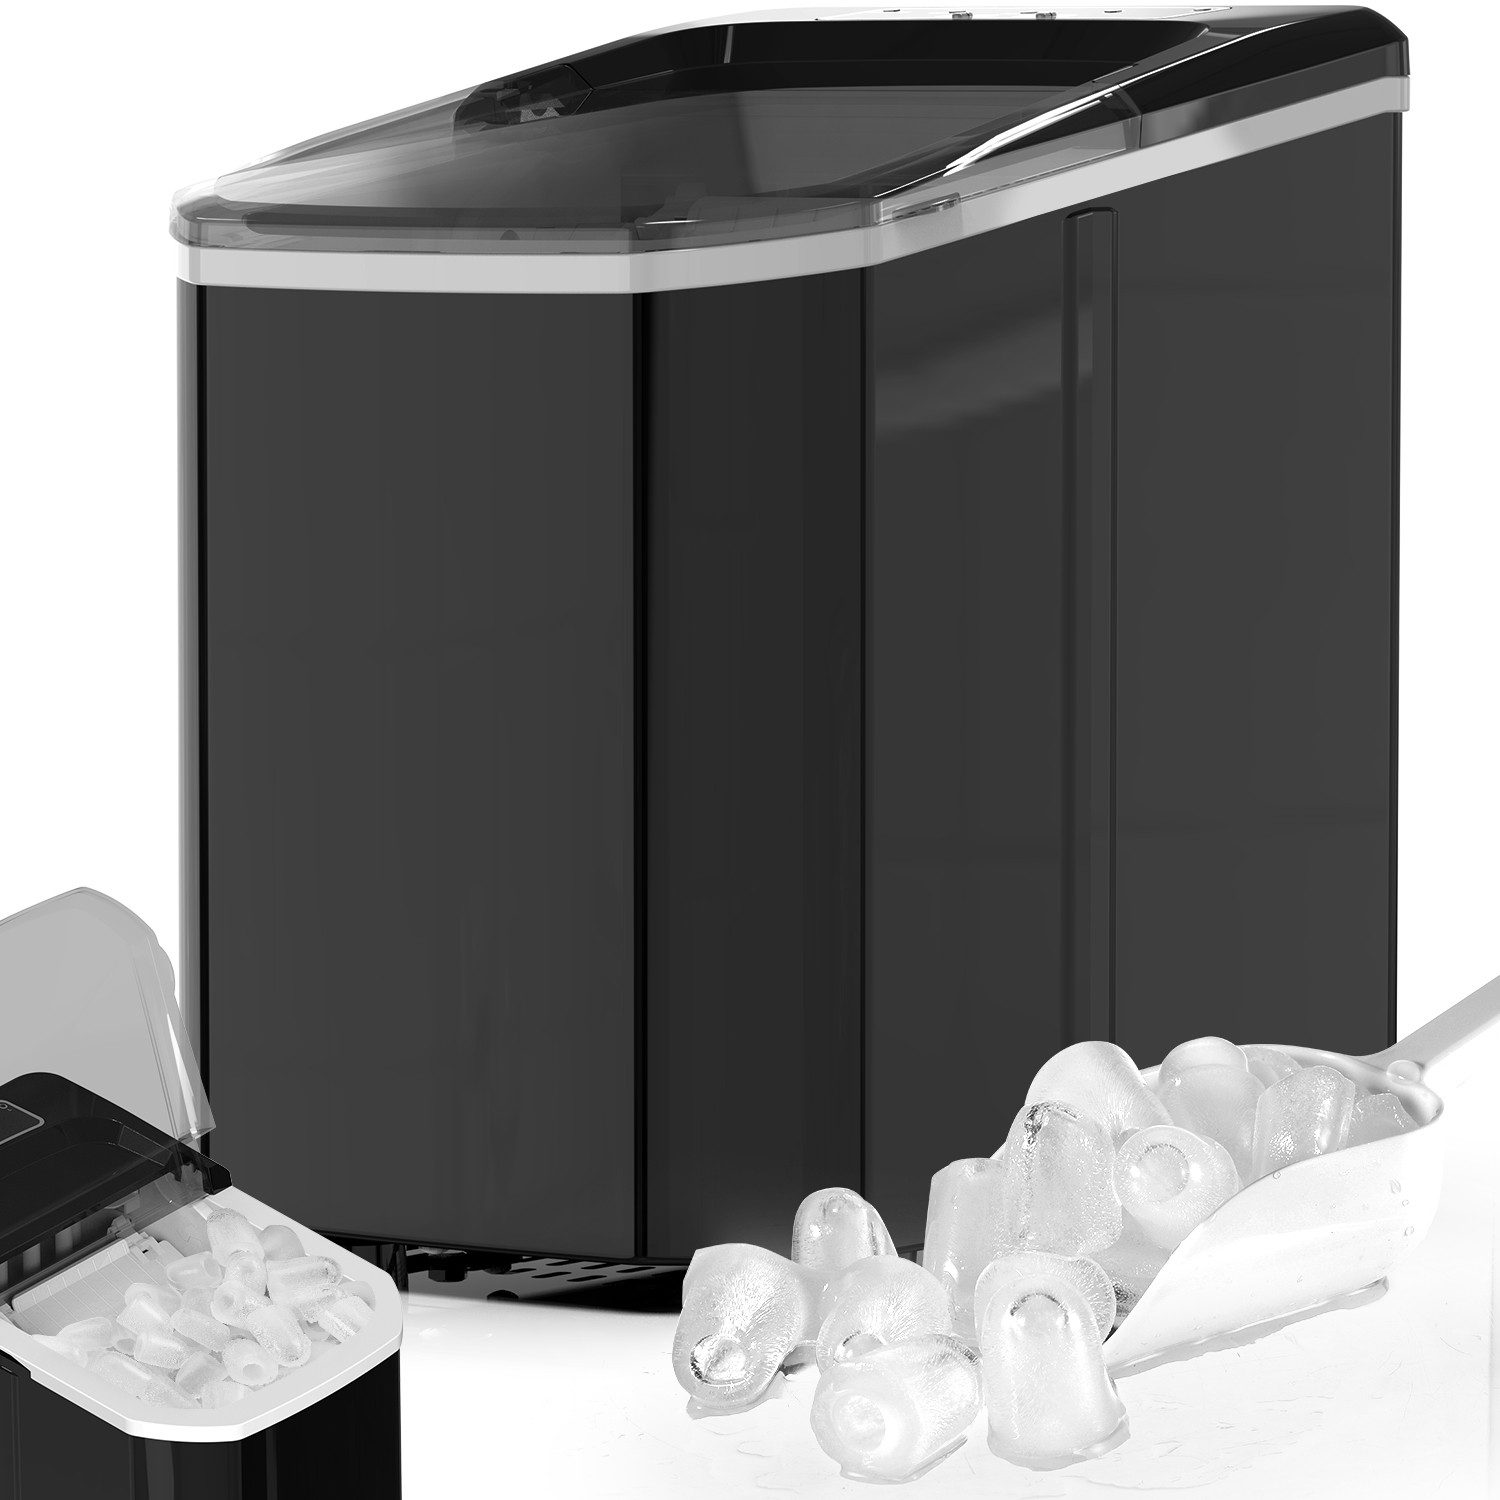 oyajia Eiswürfelmaschine Eiswürfelmaschine, 2 Liter Eiswürfelbereiter, 9 Eiswürfel in 8 Minuten, 105W